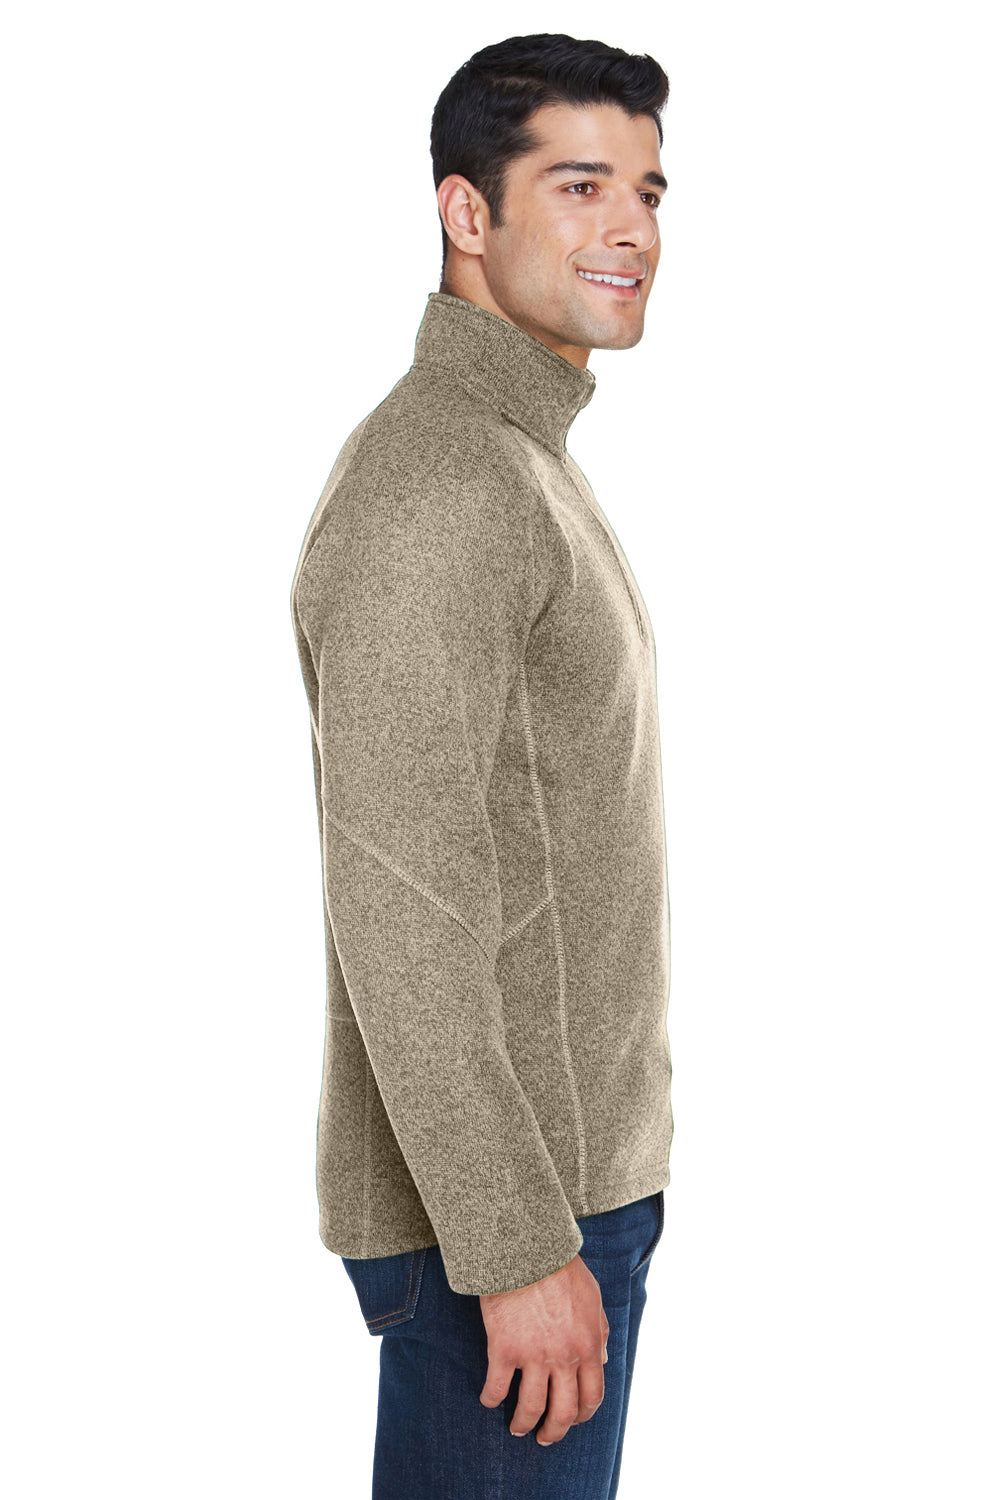 Devon & Jones DG792 Mens Bristol Sweater Fleece 1/4 Zip Sweatshirt Khaki Brown Side